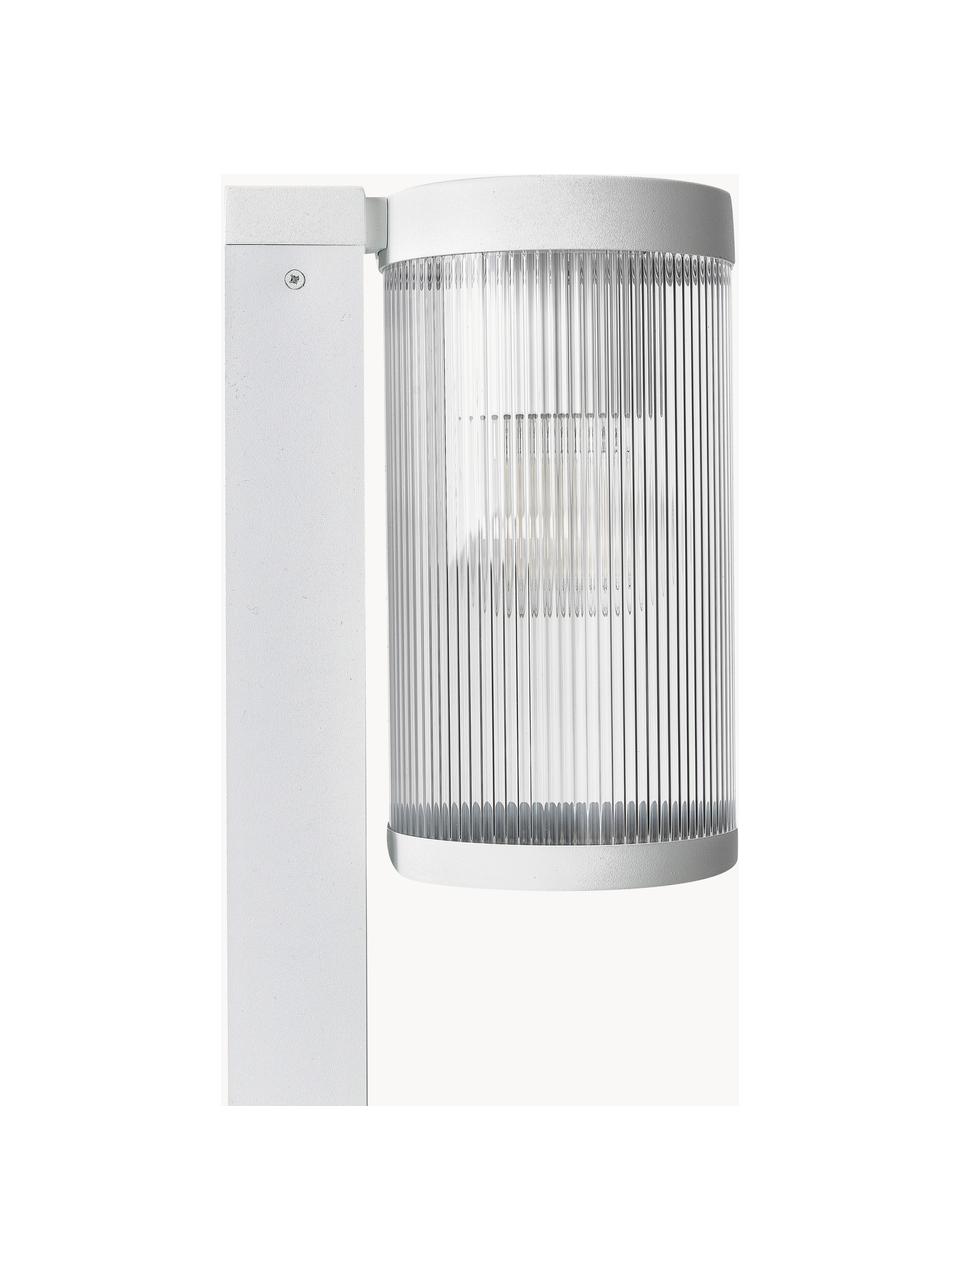 Lampada da terra dimmerabile per esterni Couper, Struttura: alluminio rivestito, Bianco, Ø 14 x Alt. 80 cm